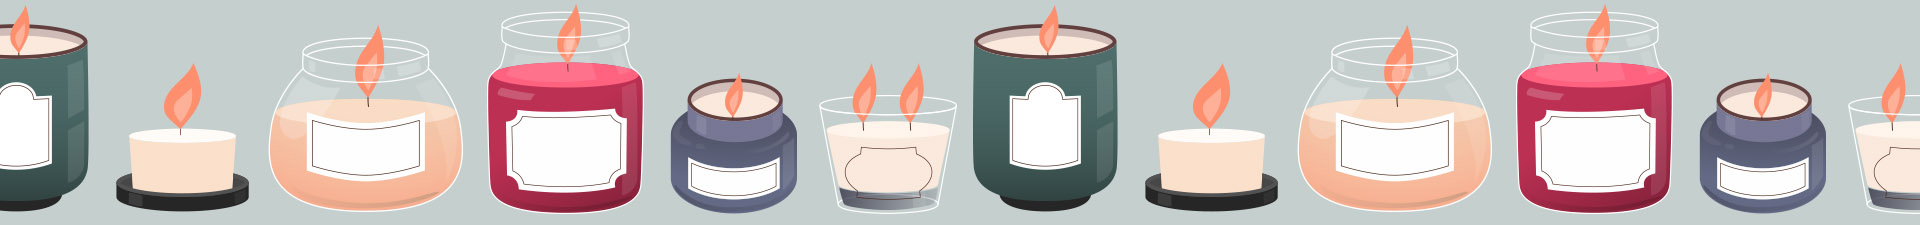 grossiste en bougies en pot